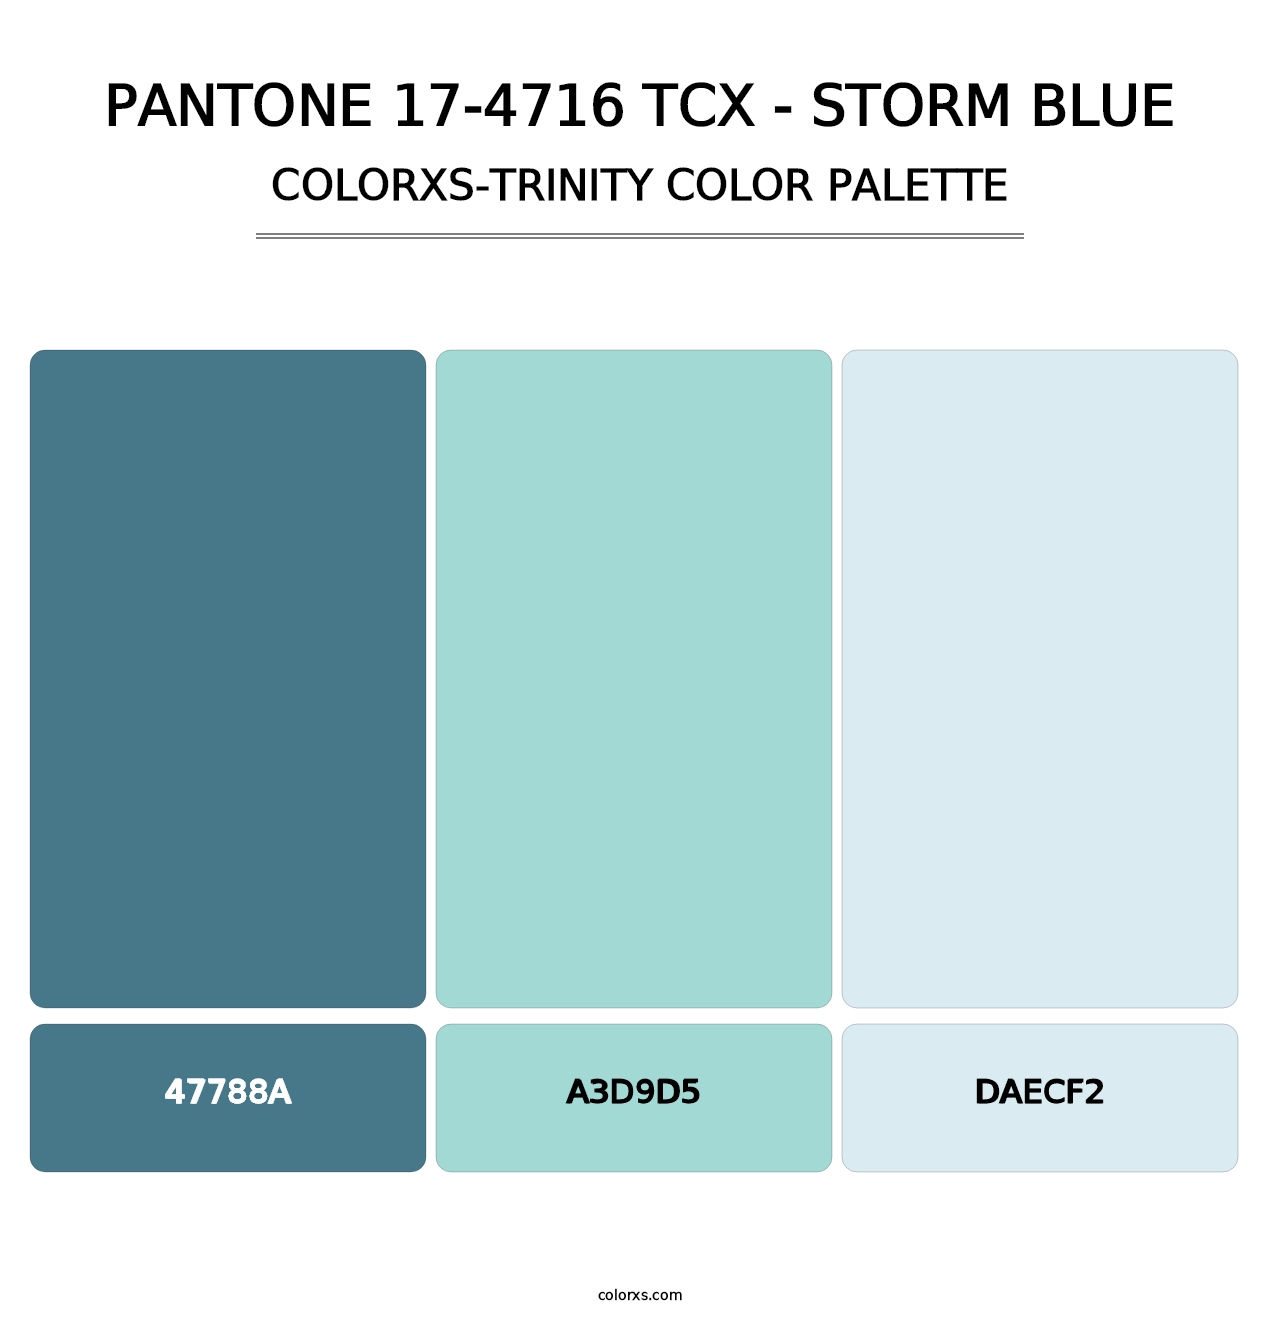 PANTONE 17-4716 TCX - Storm Blue - Colorxs Trinity Palette